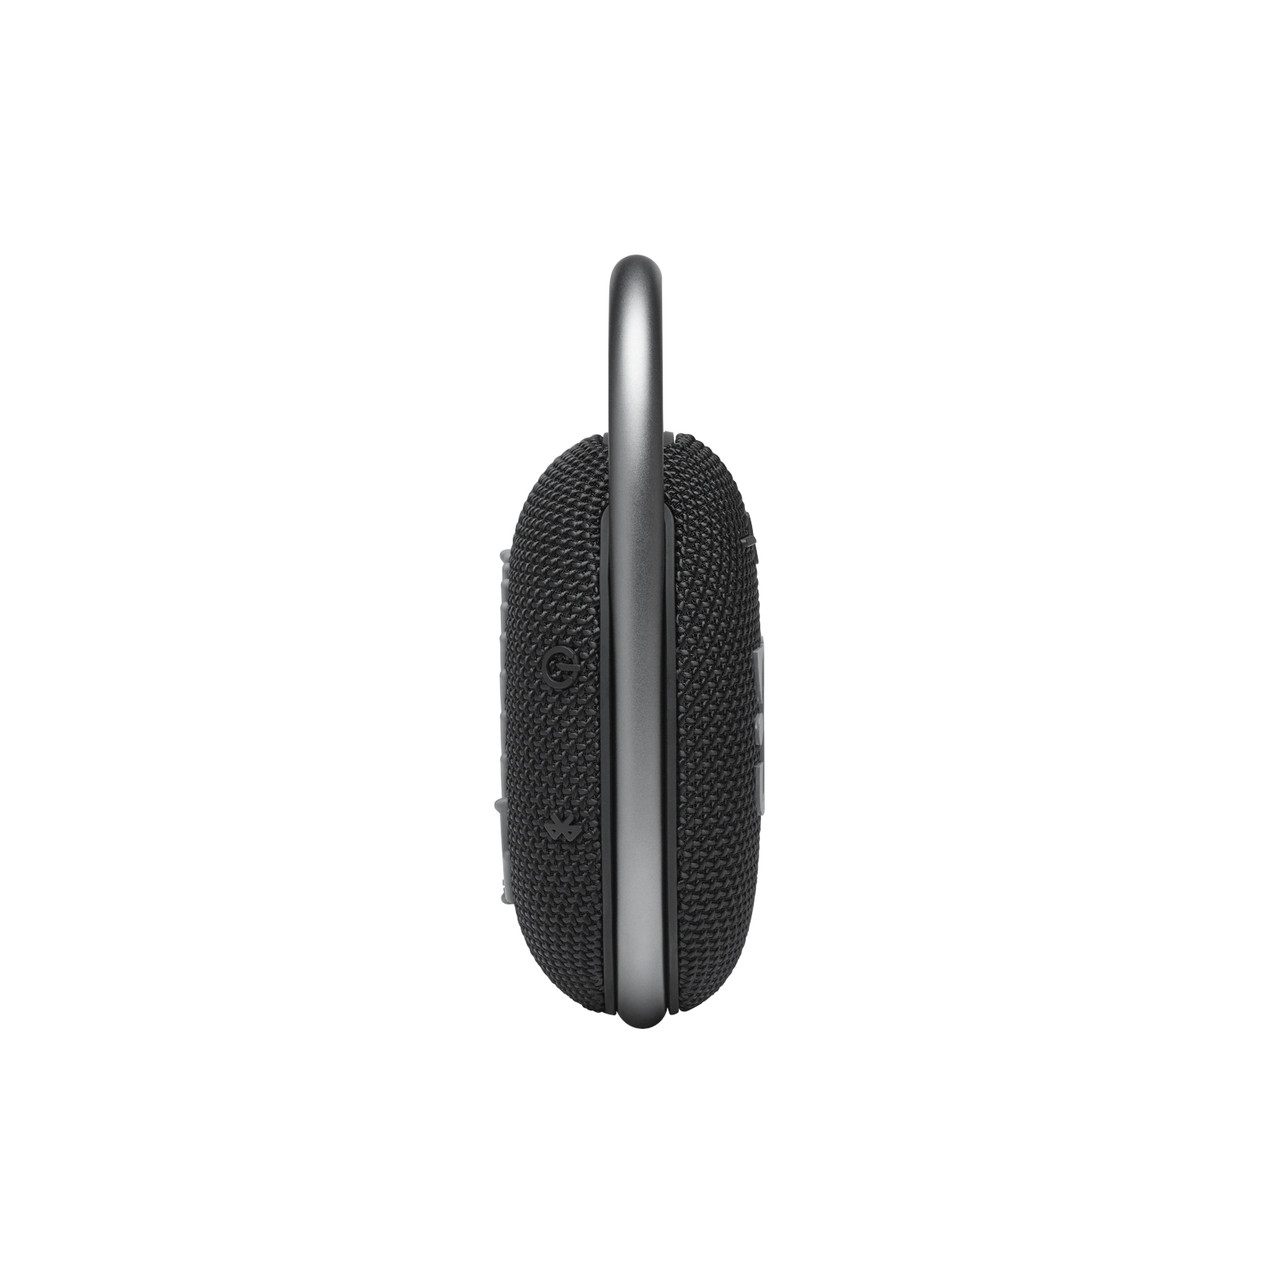 JBL Clip 4 (Black) Waterproof portable Bluetooth® speaker at